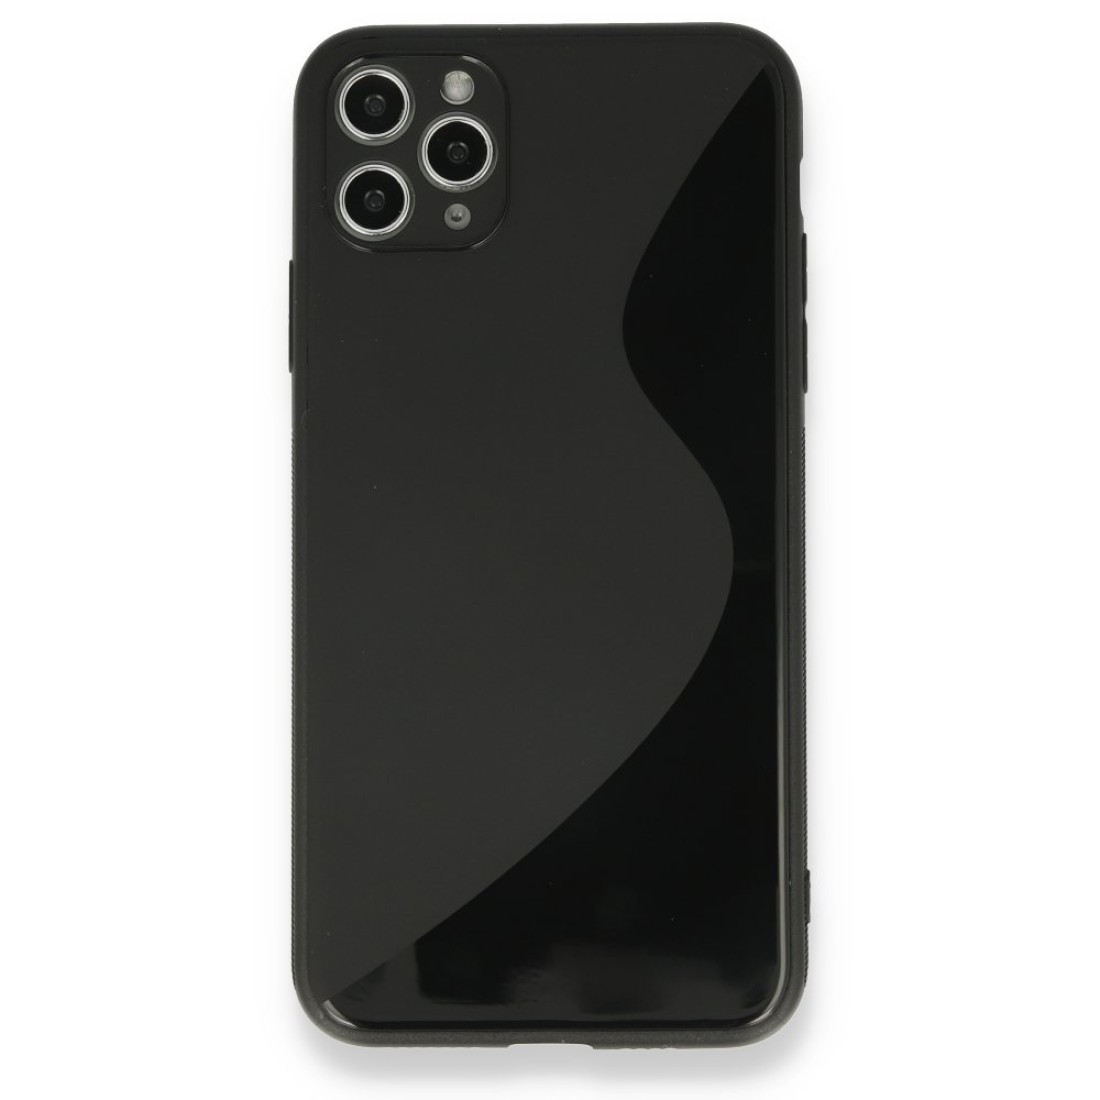 Apple iPhone 11 Pro Kılıf S Silikon - Siyah